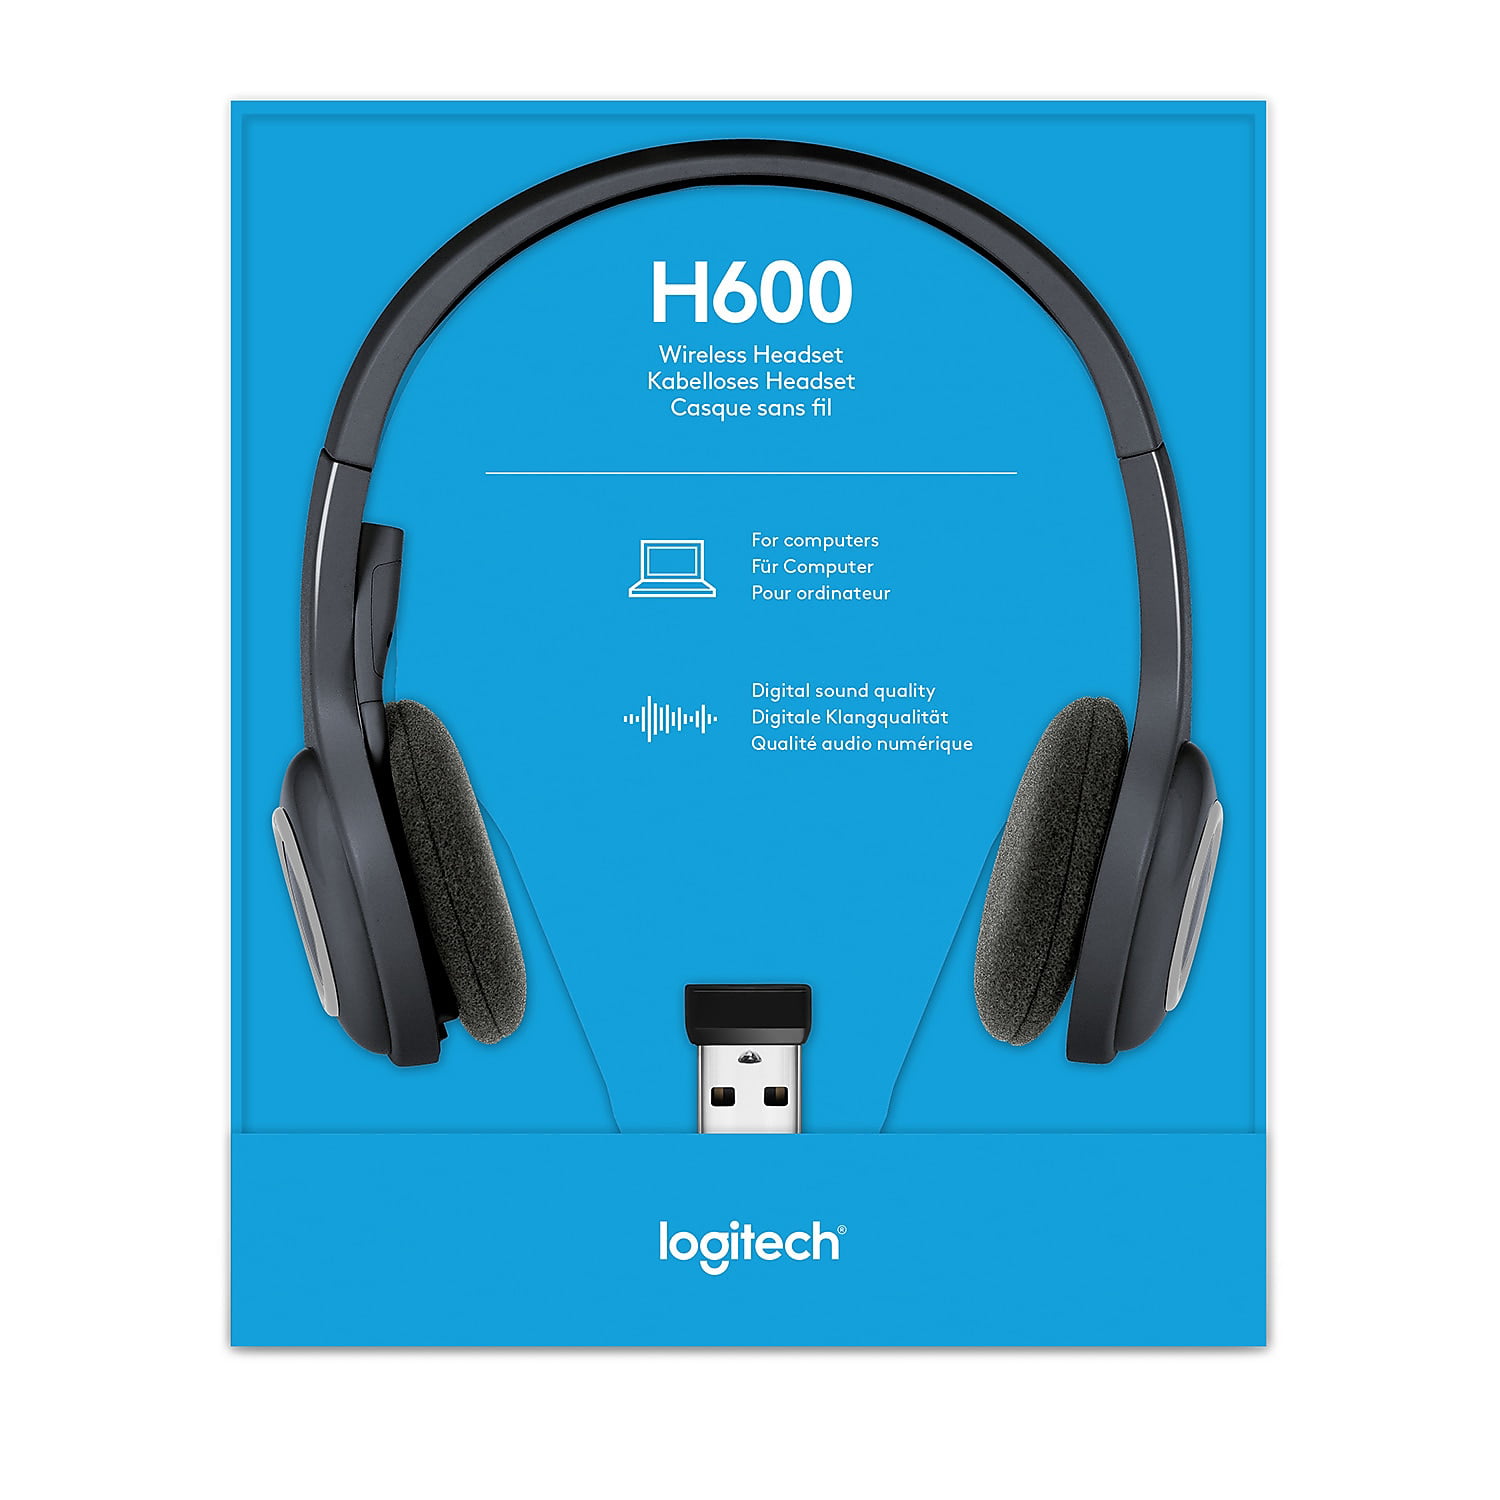 Verrassend genoeg Walter Cunningham Conflict Logitech Wireless Headset H600 - Walmart.com